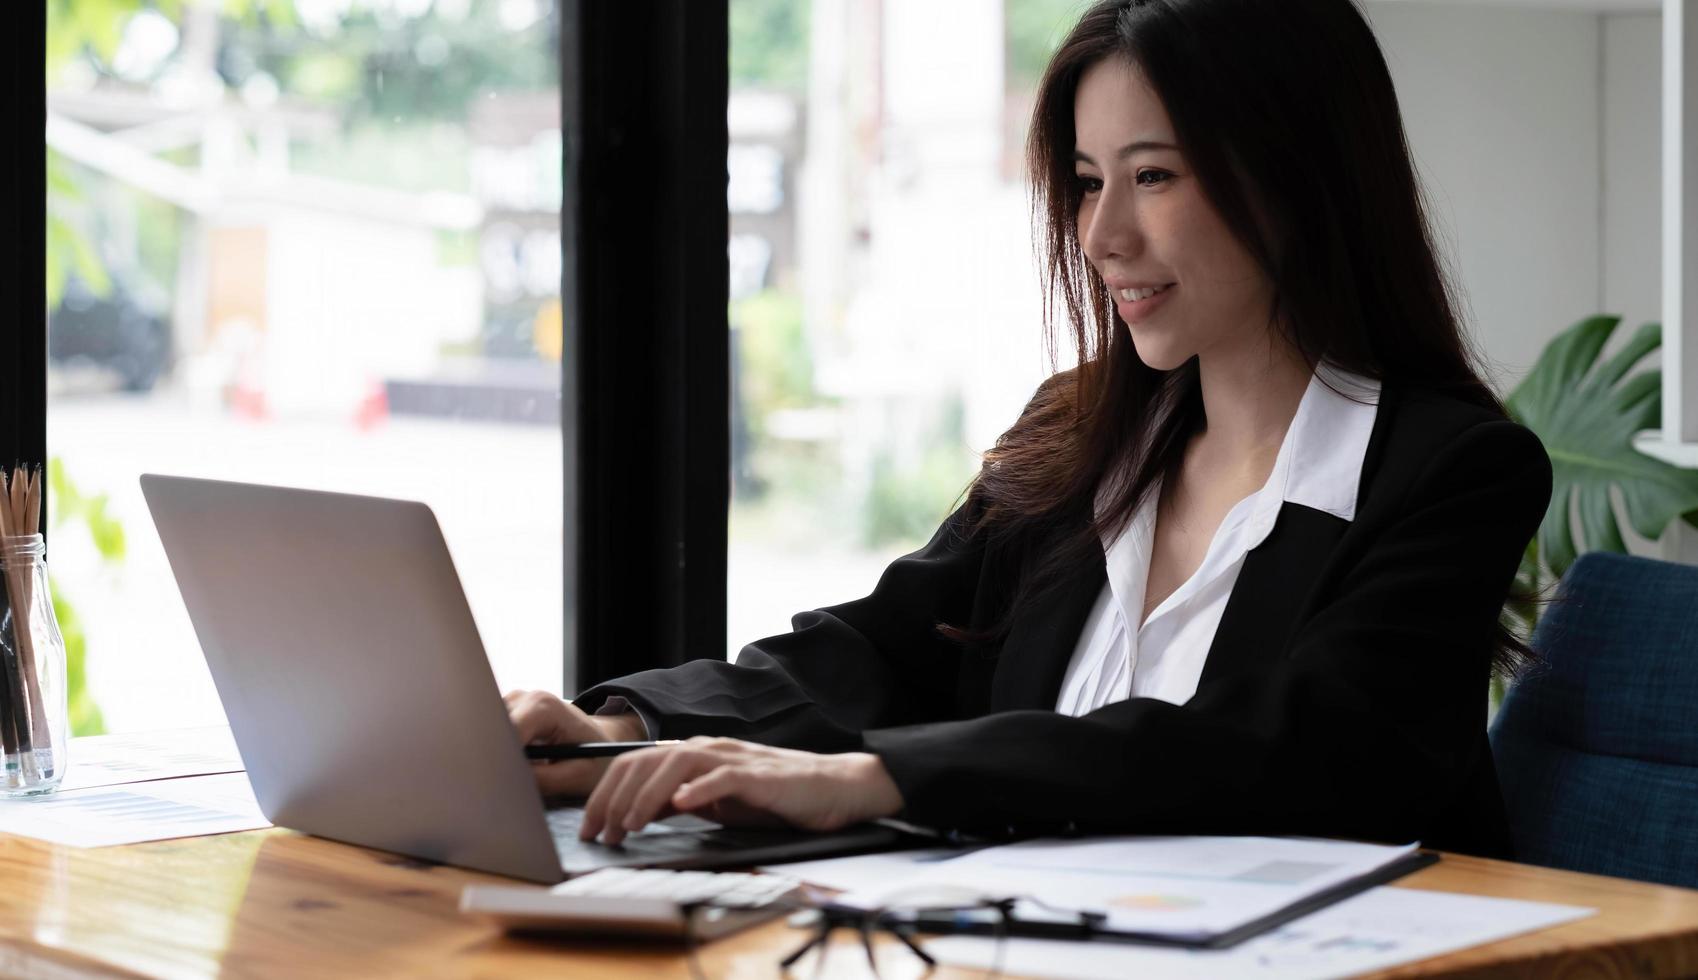 femme d'affaires asiatique utilisant un ordinateur portable pour faire des finances mathématiques sur un bureau en bois au bureau, fiscalité, comptabilité, concept financier photo